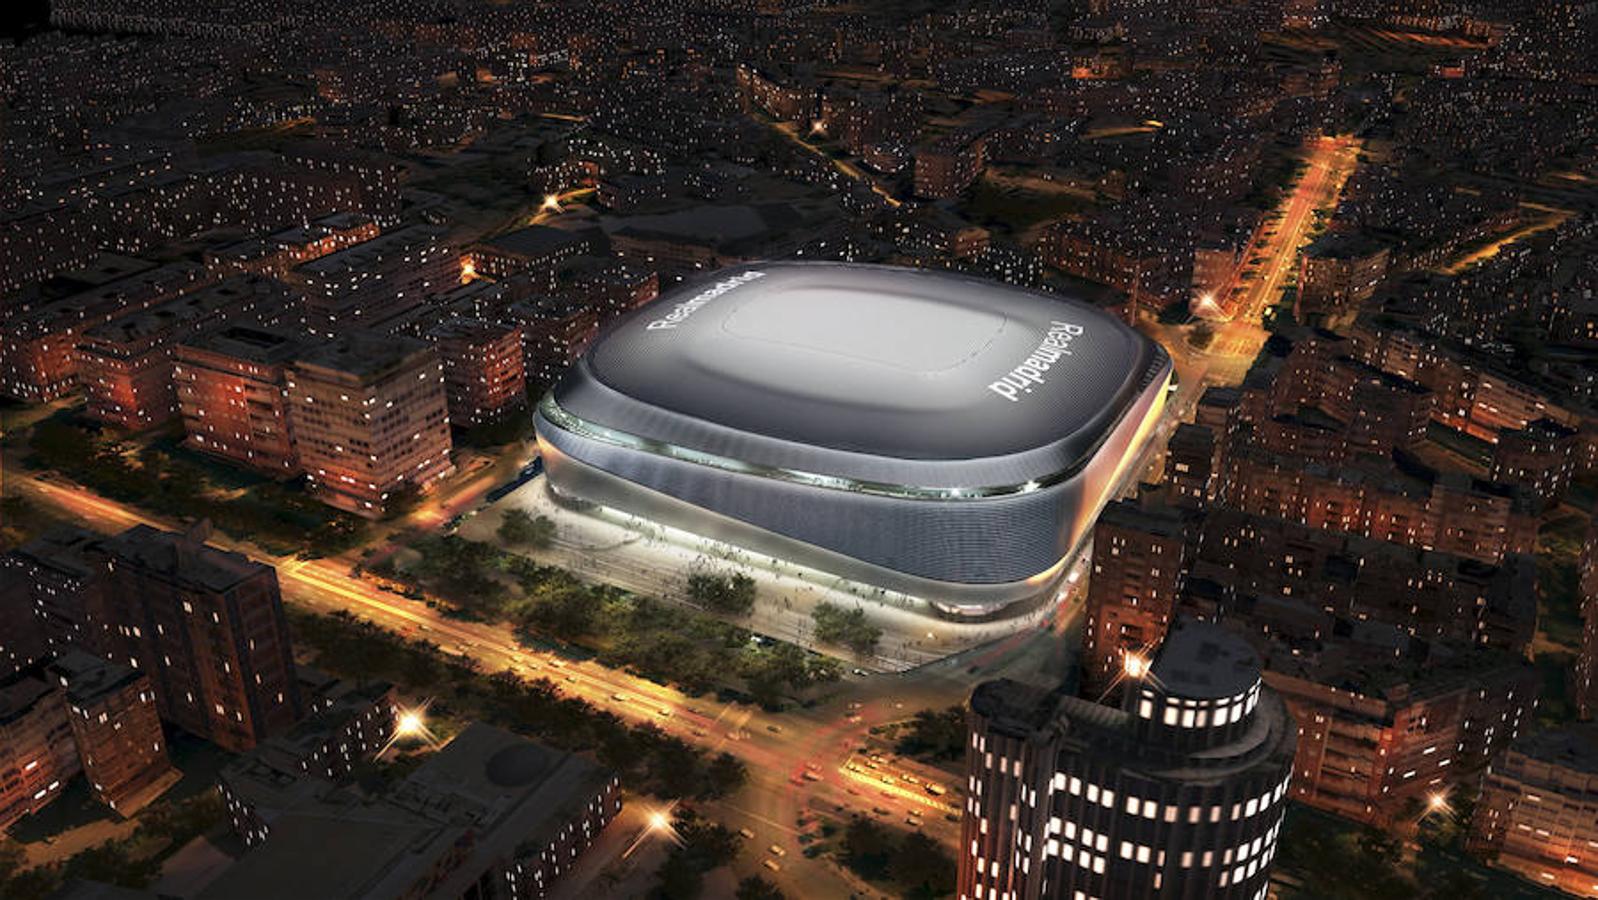 El Santiago Bernabéu del siglo XXI, en imágenes